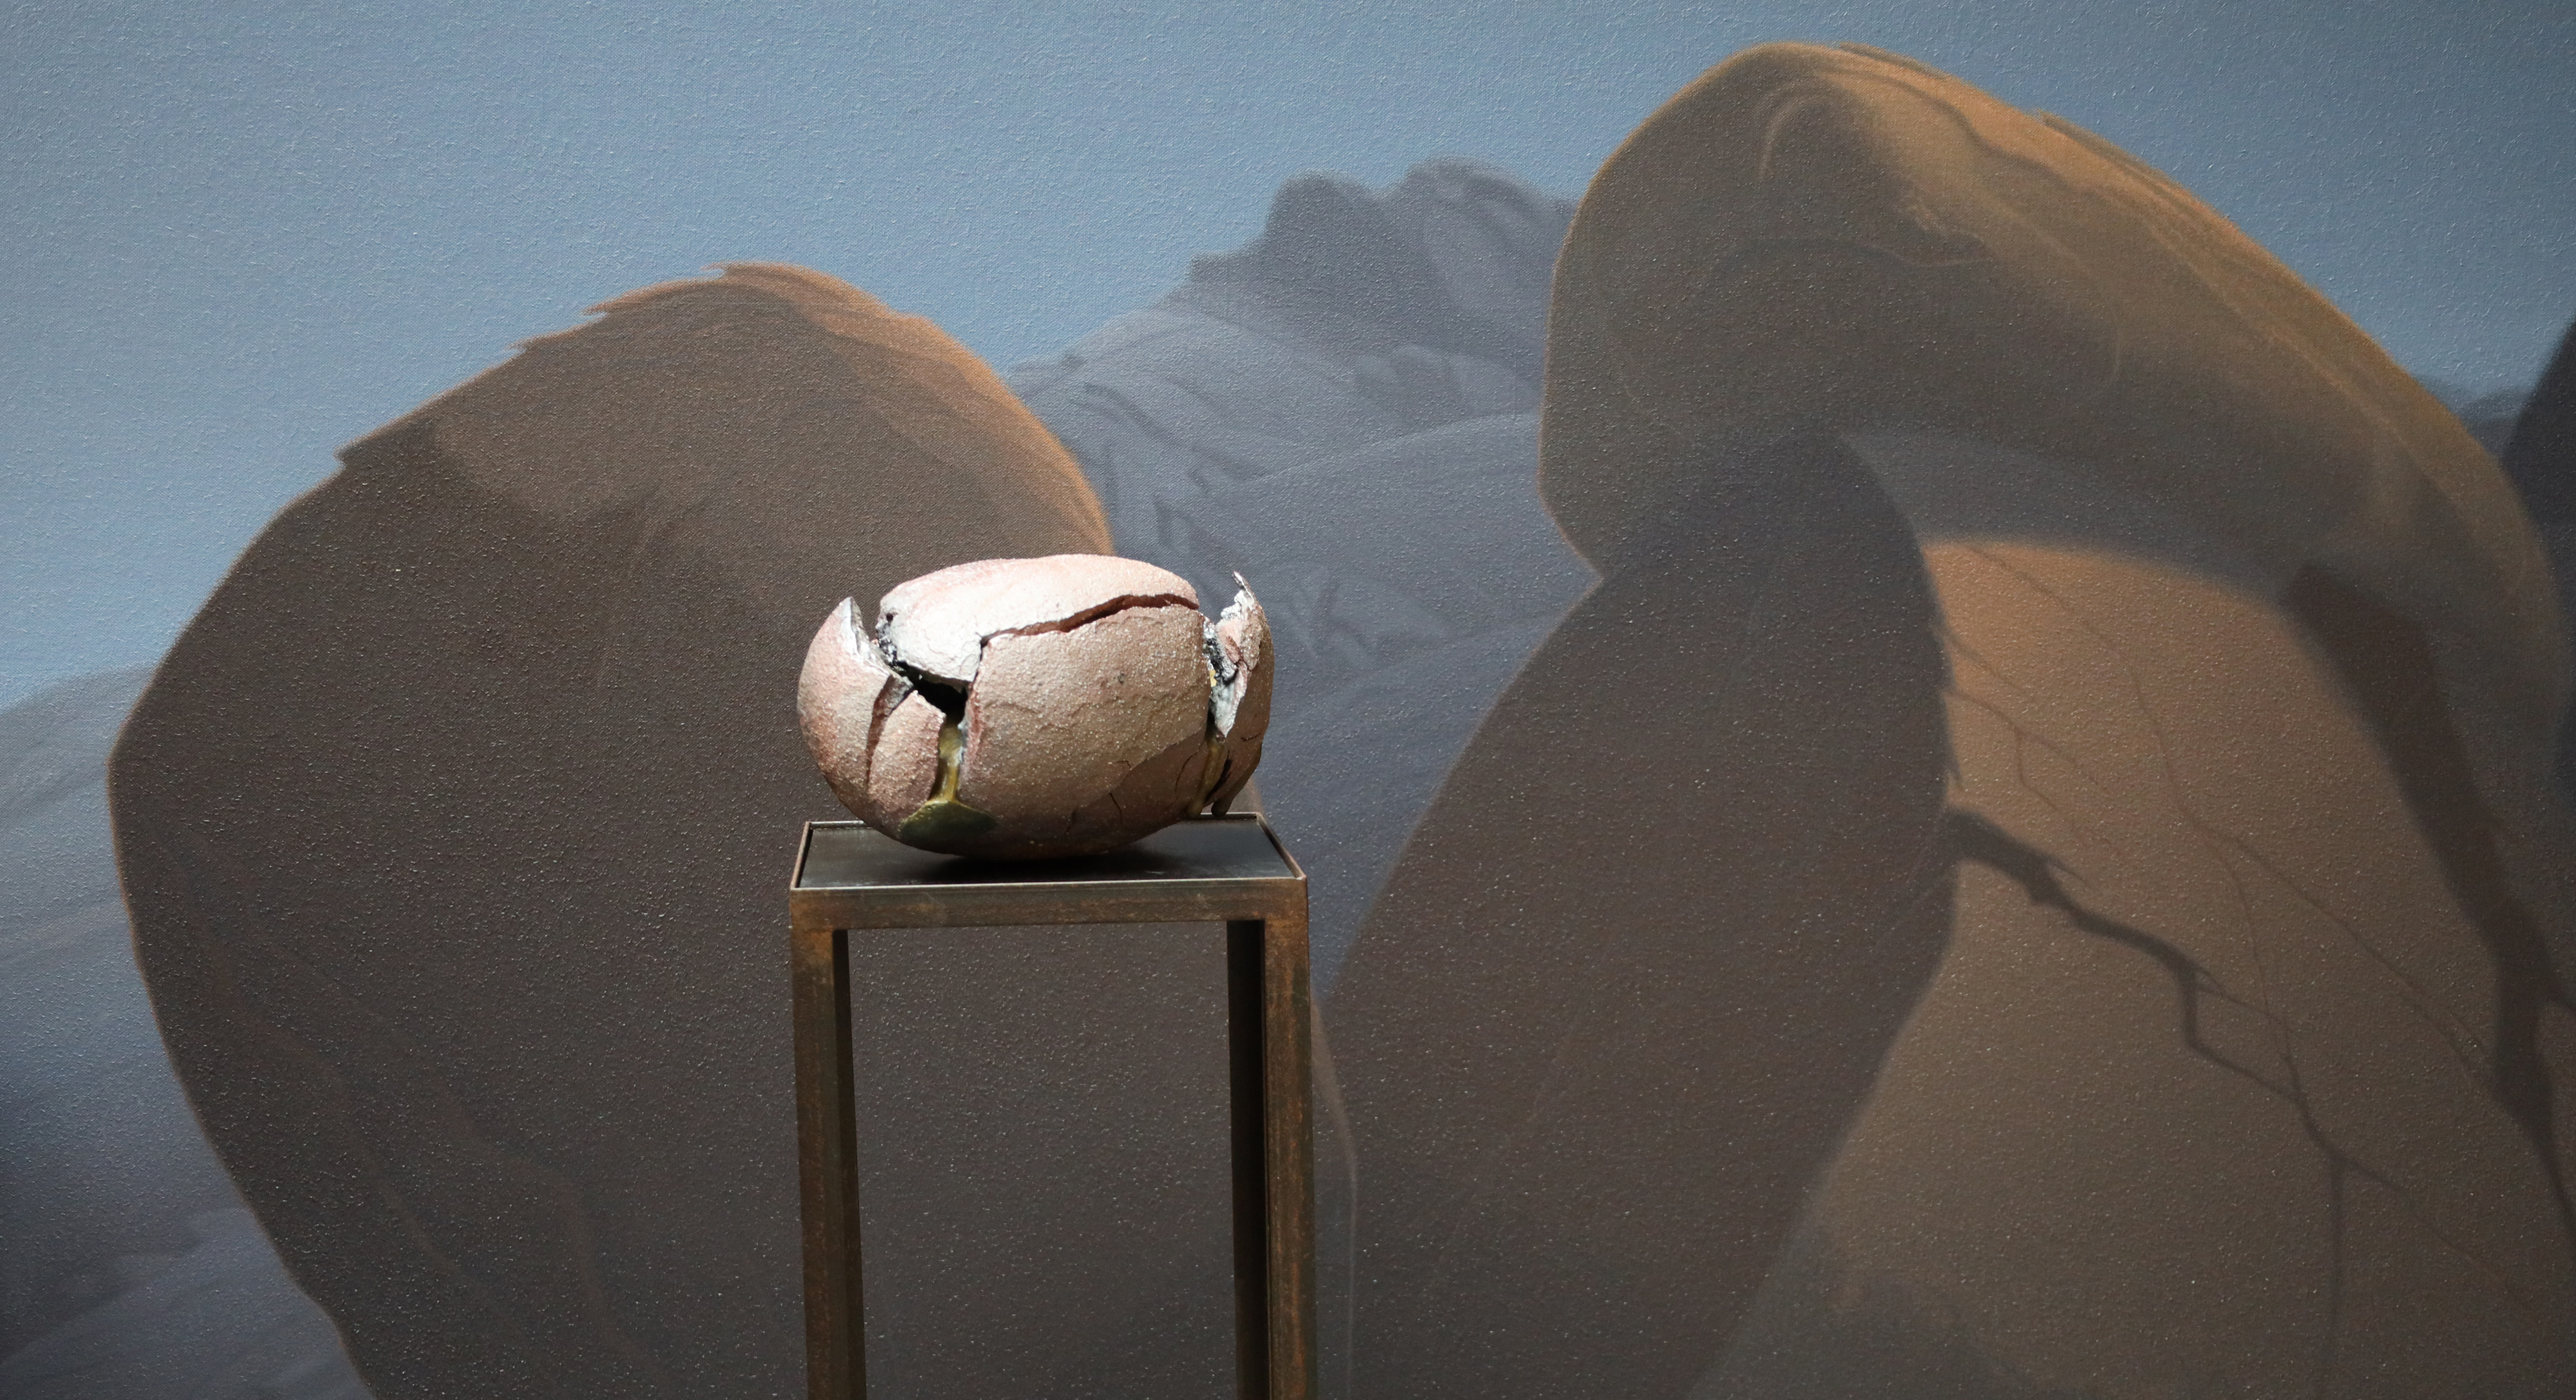 Keramik-Objekt vor gemalter Wüstenlandschaft in Braun und Blau